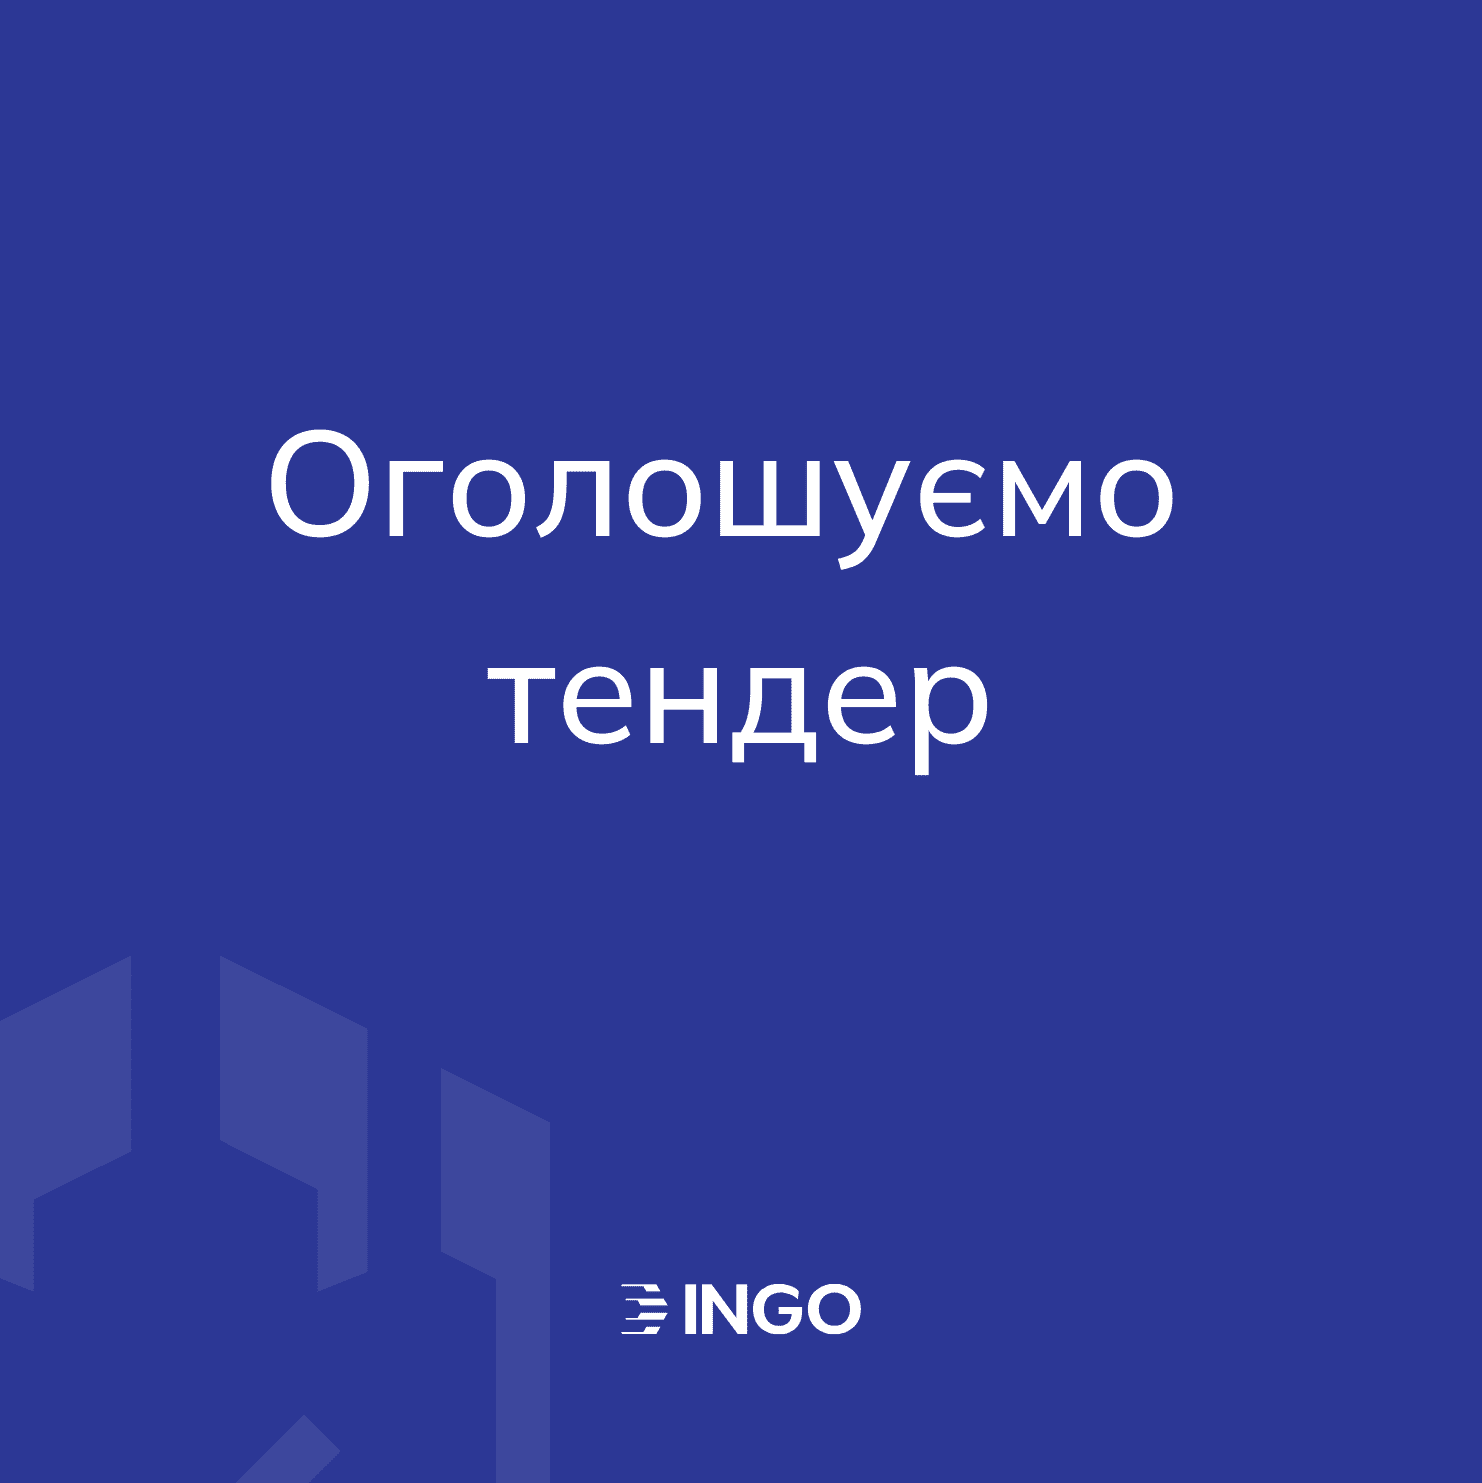 Компания ИНГО объявляет открытый тендер для выбора подрядчика, по изготовлению и размещению наружной рекламы